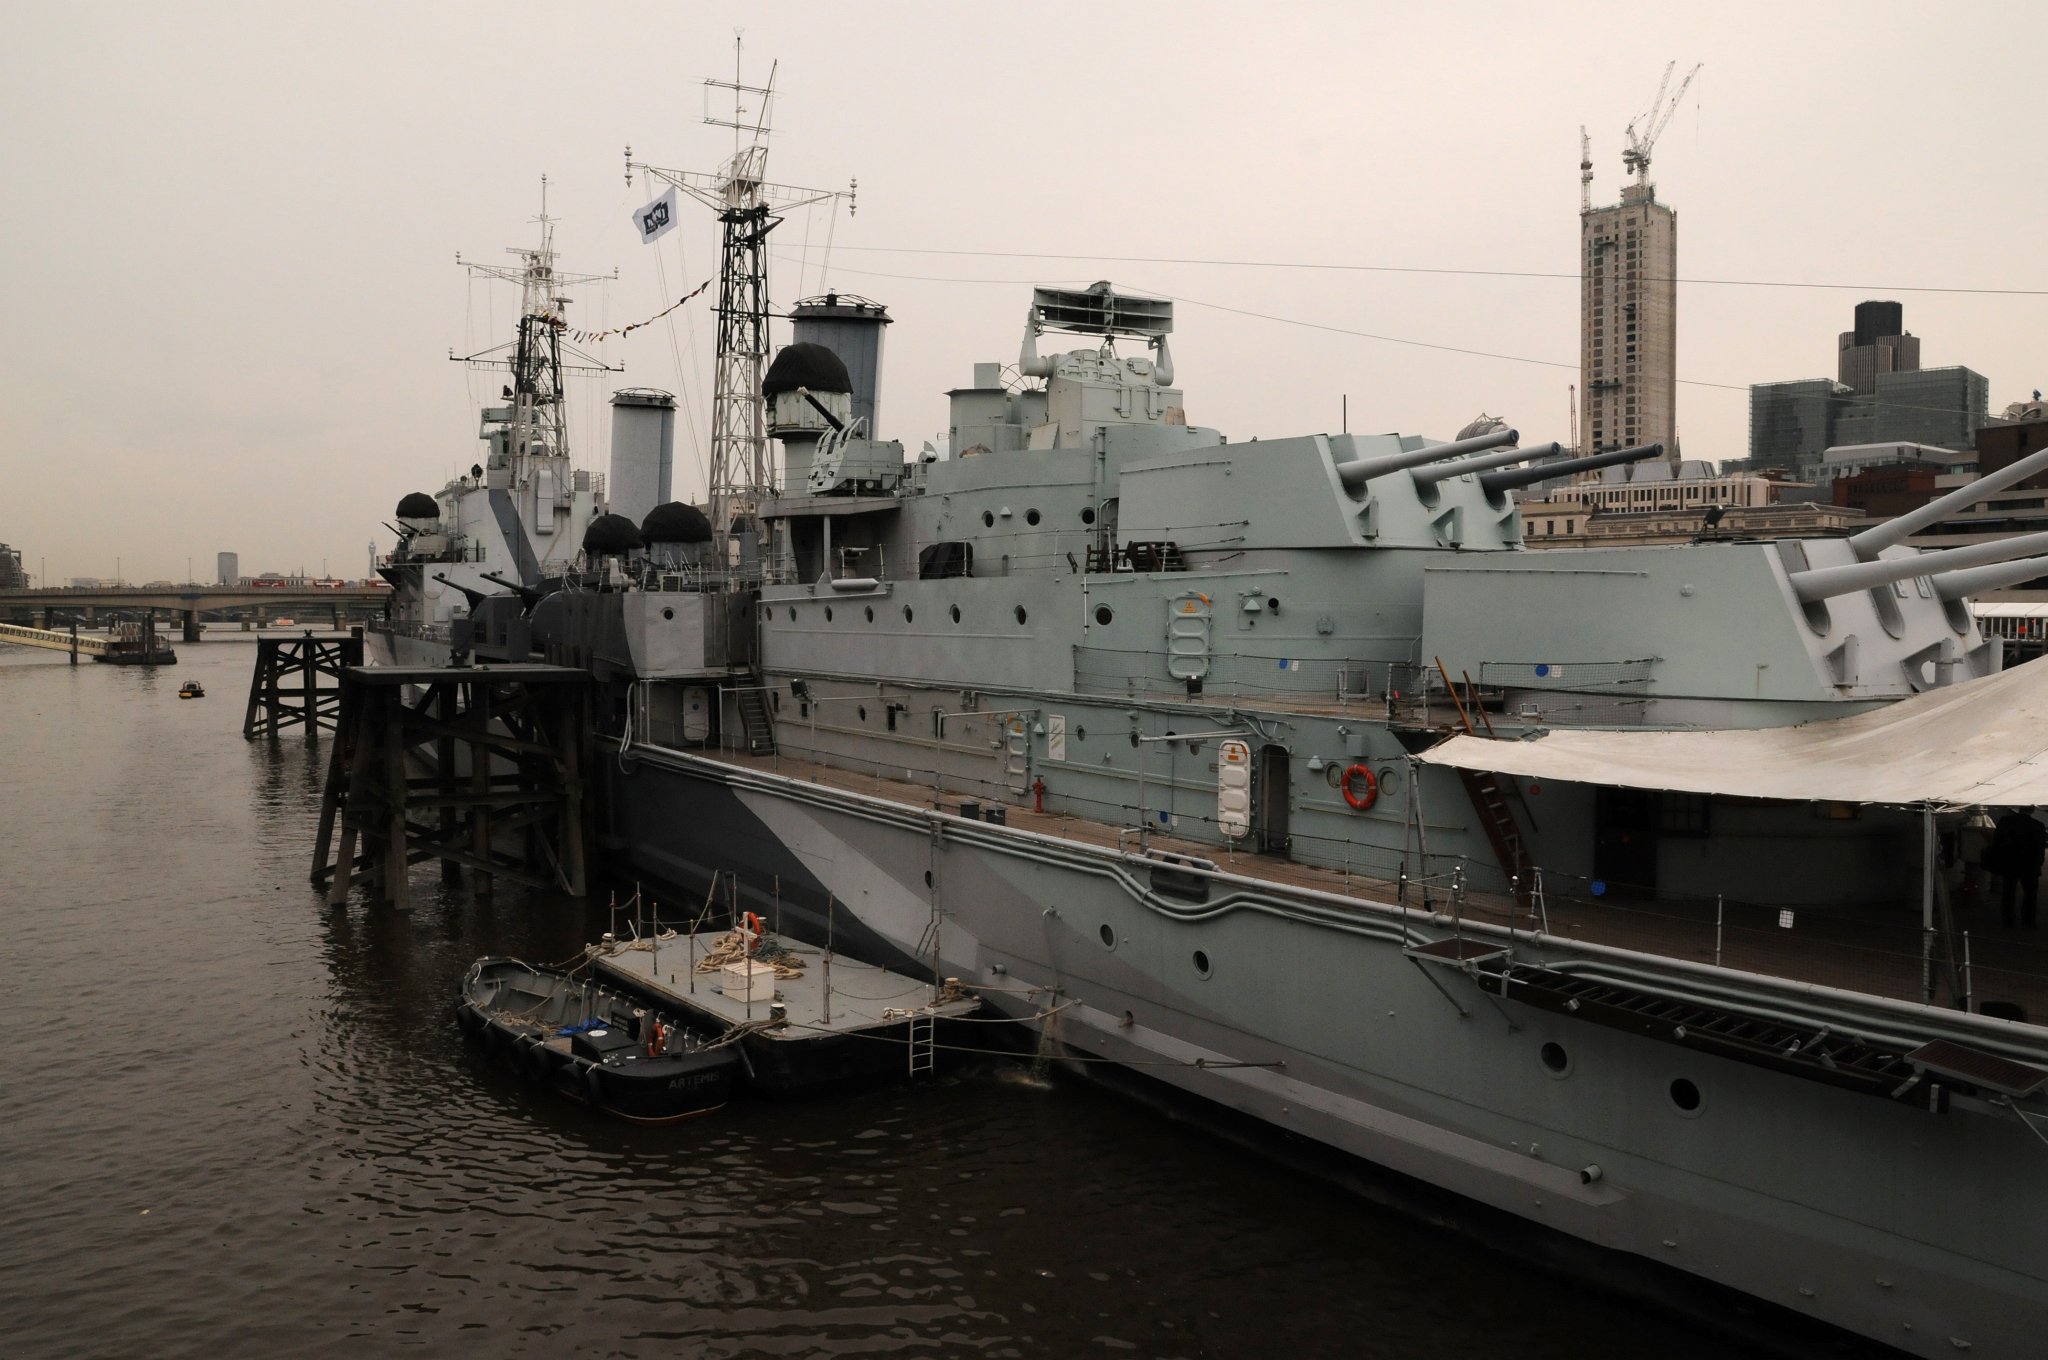 DSC_4965_3.jpg - Loď byla vyřazena z provozu roku 1963 a roku 1971 bylo rozhodnuto, že loď zůstane zachována jako památník britského námořnictva 1. poloviny 20. století. Byla zakoupena za pouhou 1 libru pro Imperial War Museum. Toho samého roku byla u příležitosti oslav bitvy u Trafalgaru zpřístupněna veřejnosti.